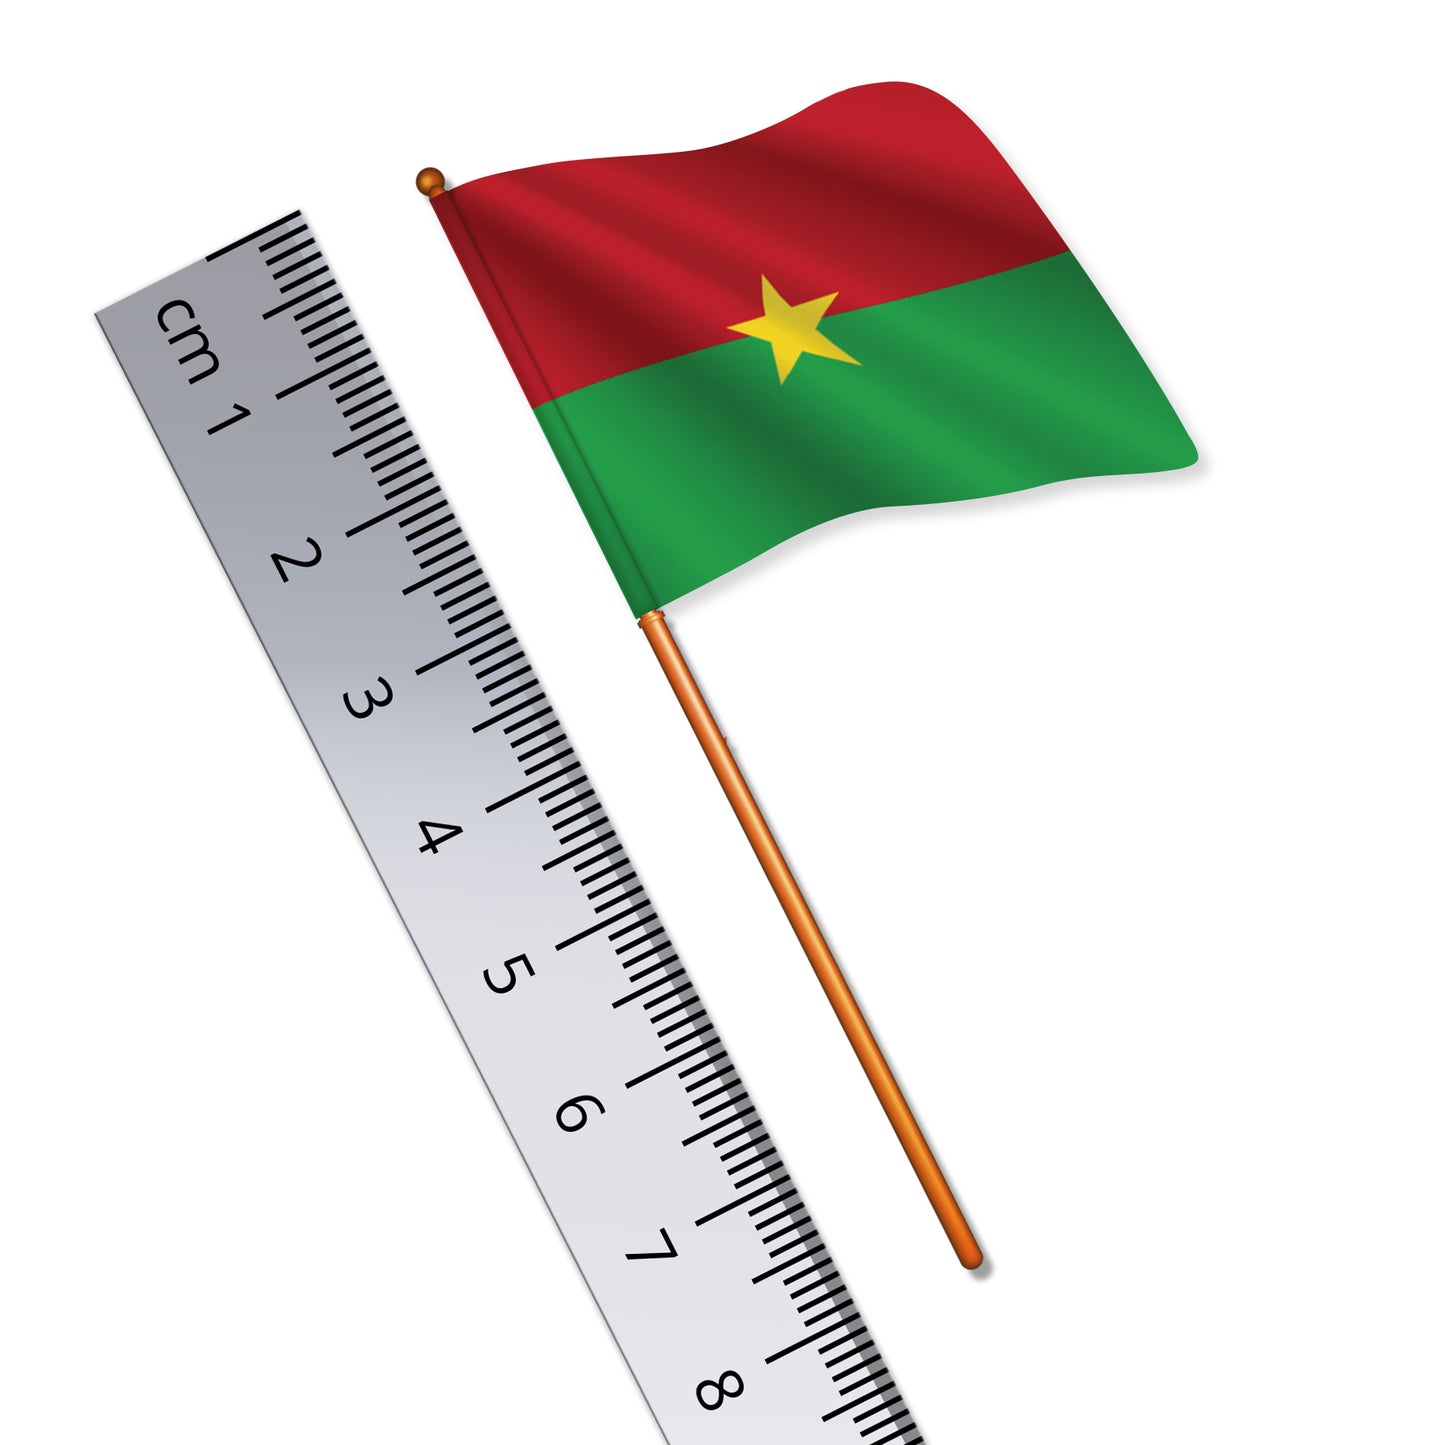 Burkinabé Flag (National Flag of Burkina Faso)